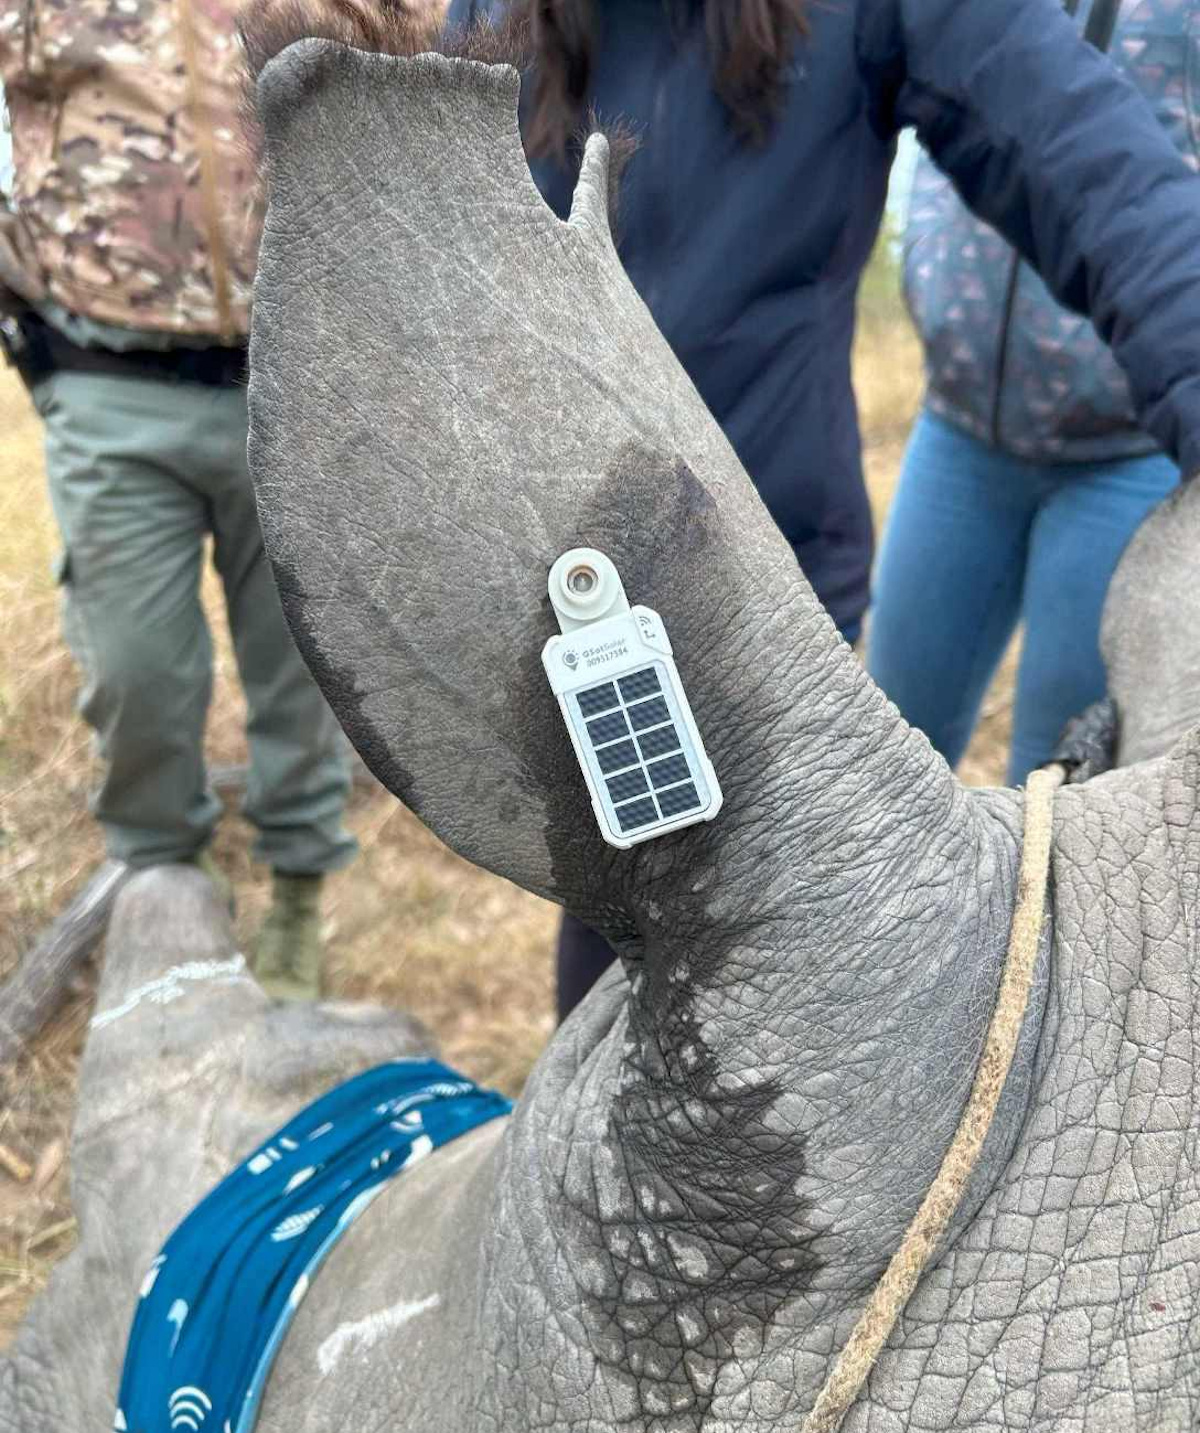 La tecnología IoT por satélite de Globalstar ayuda a salvaguardar los rinocerontes y otras especies amenazadas de África